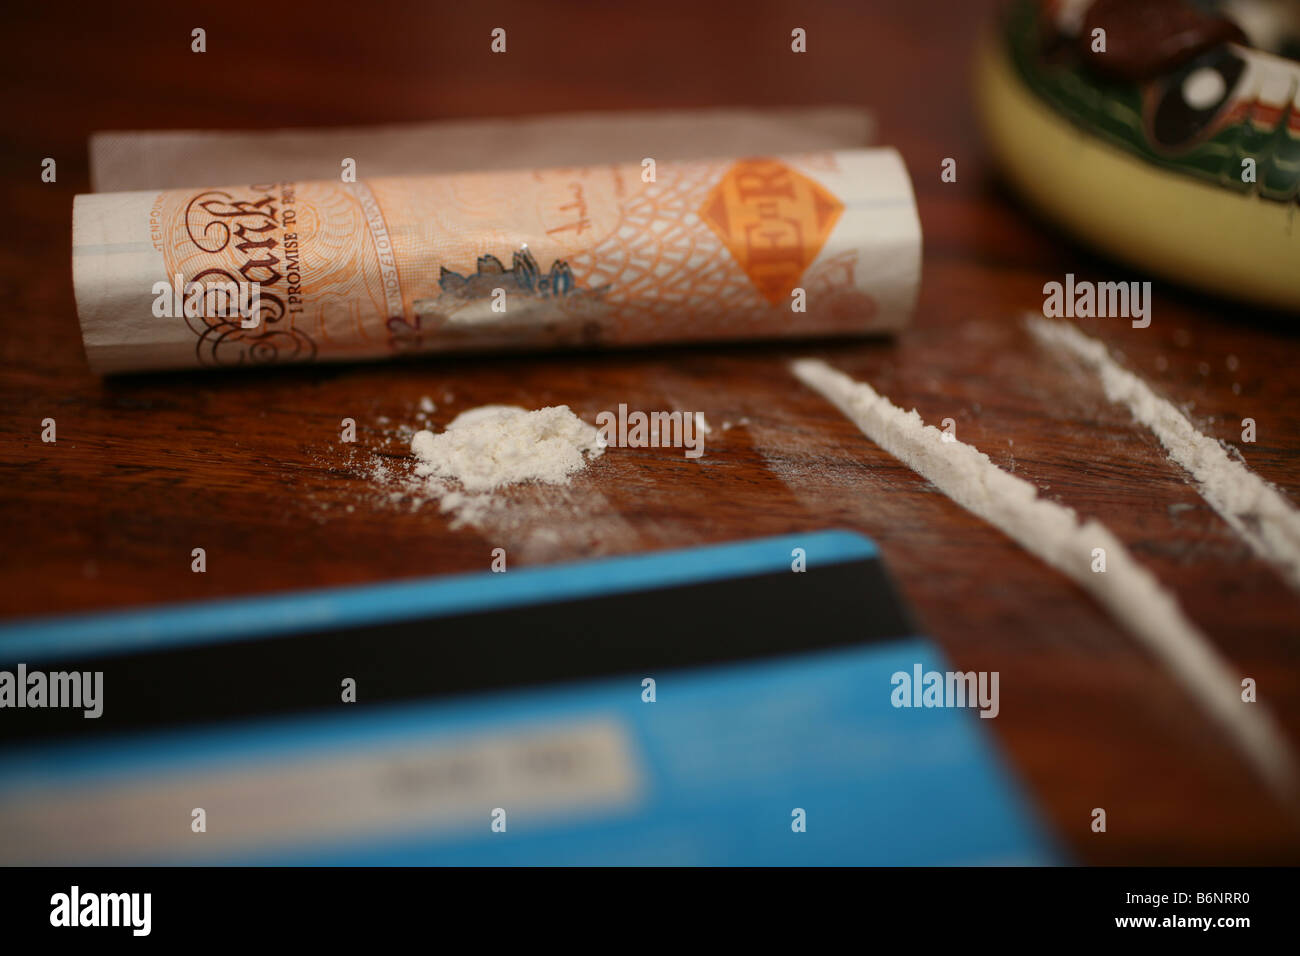 La cocaïne coupée sur une table Banque D'Images